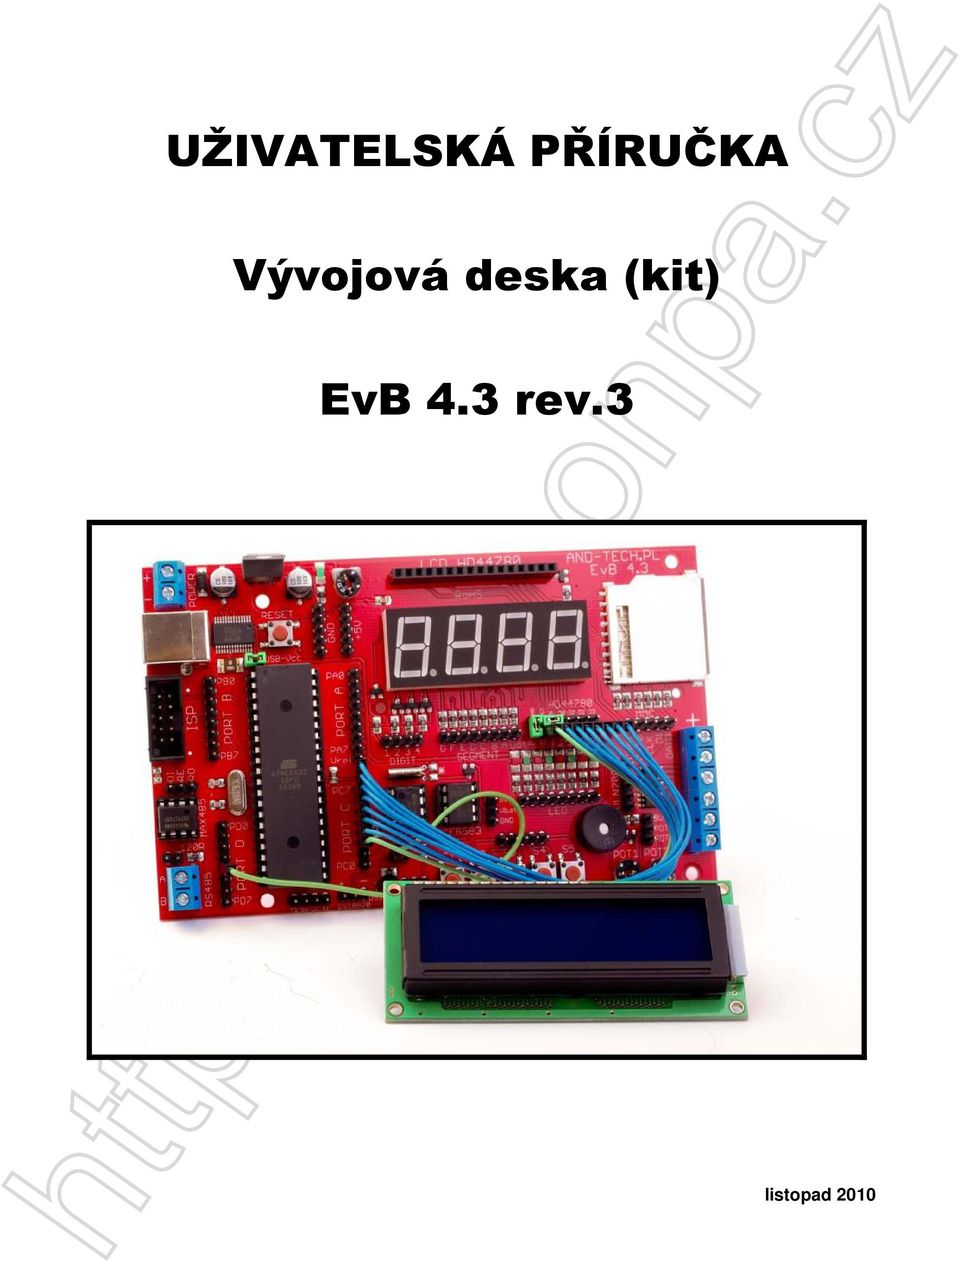 deska (kit) EvB 4.